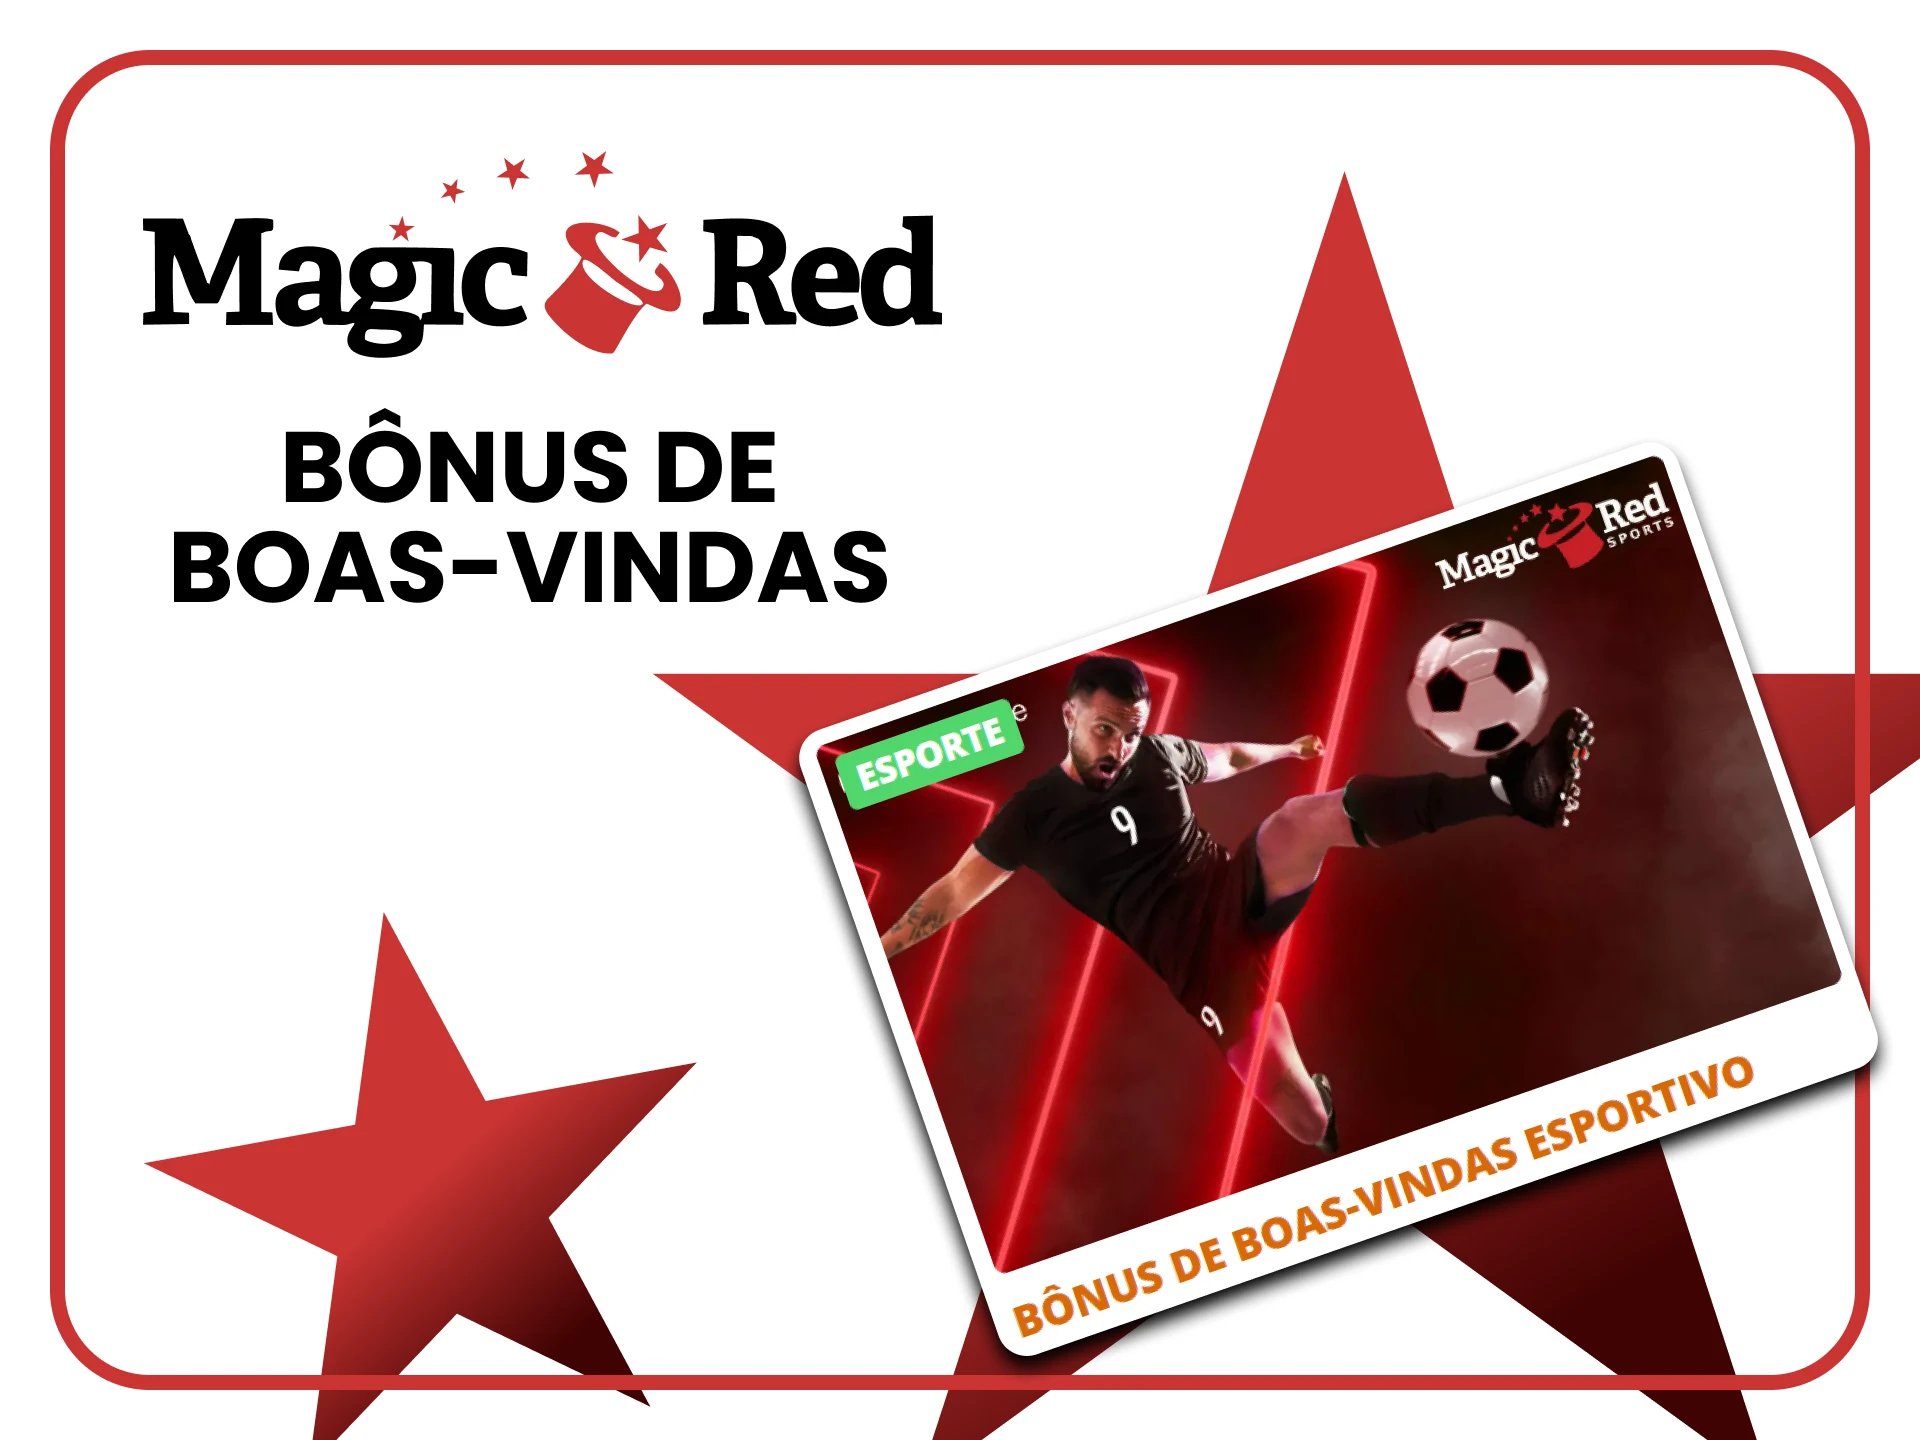 Magic Red oferece um bônus para apostas em Basquete.